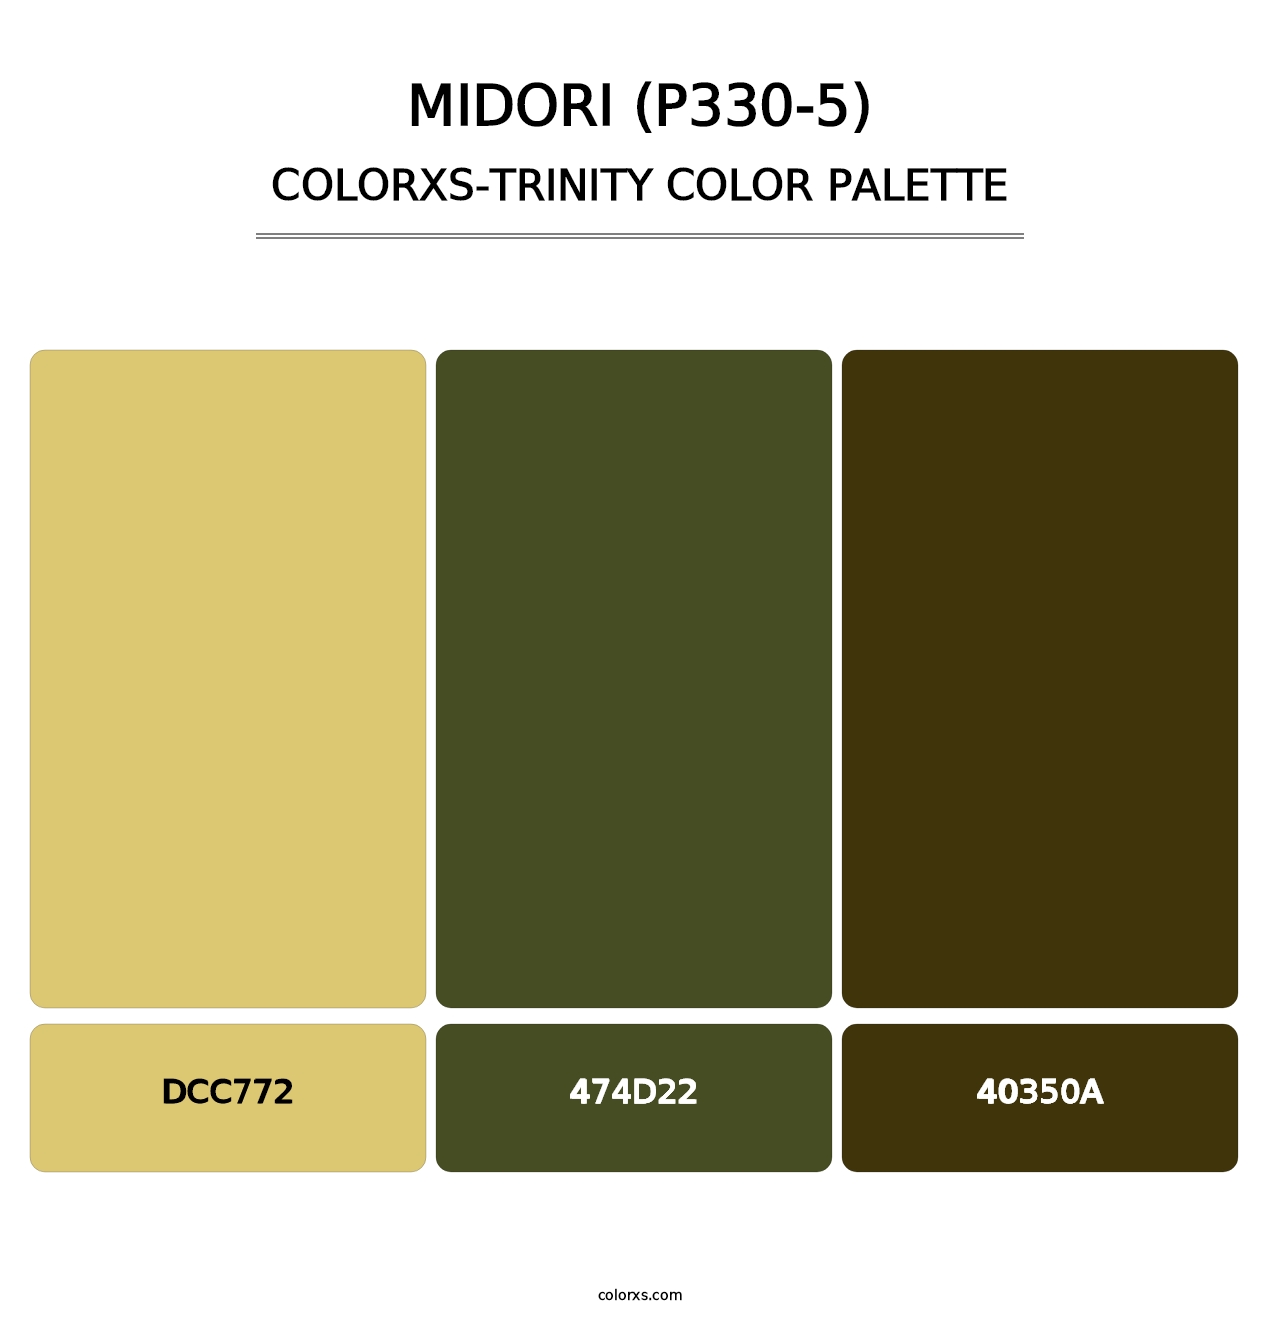 Midori (P330-5) - Colorxs Trinity Palette